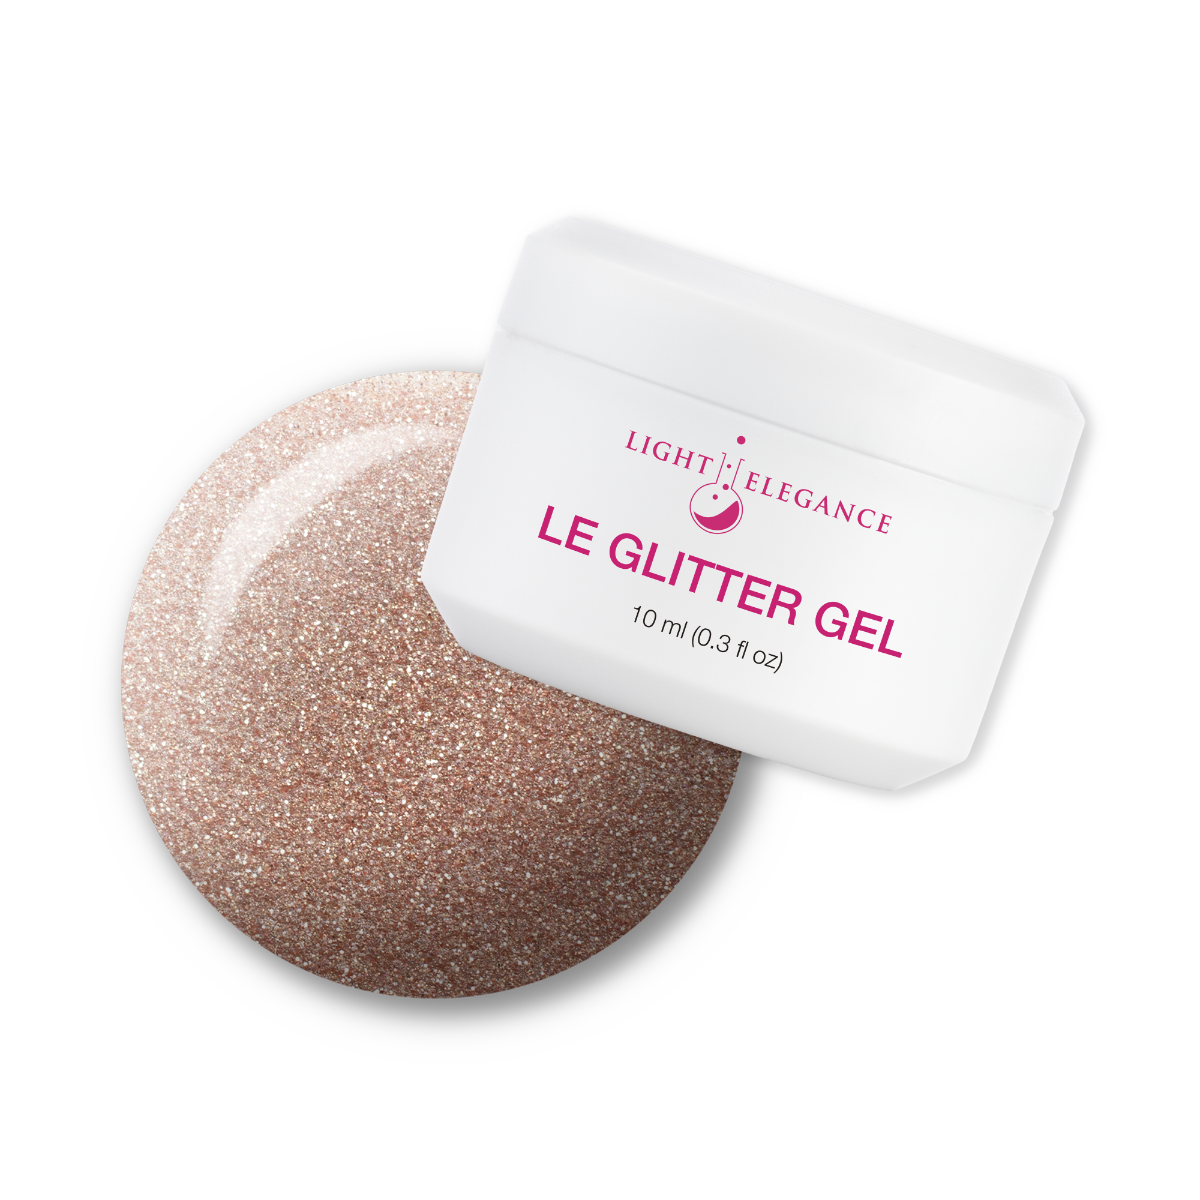 Light Elegance Glitter Gel - Pints & Quartz :: New Packaging